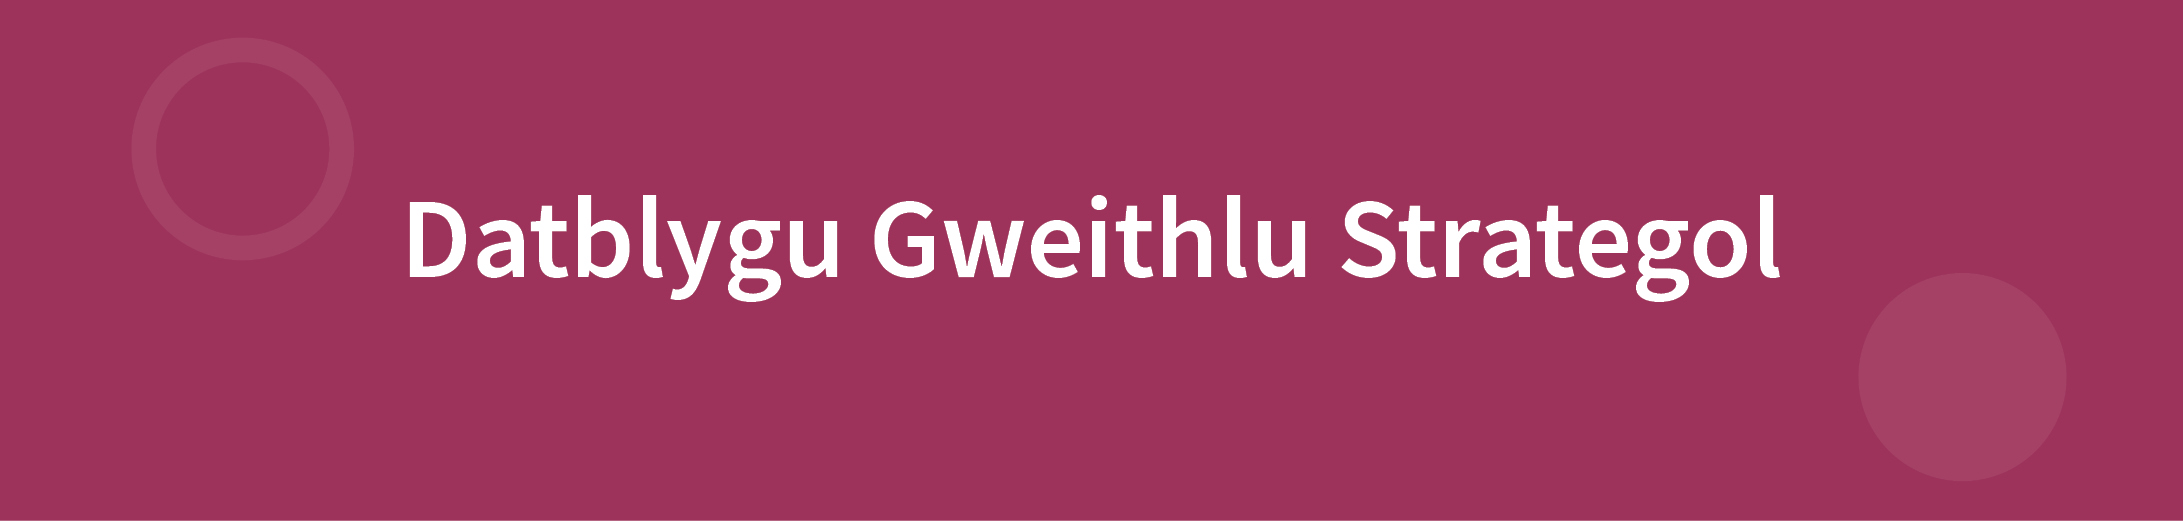 Strategic Workforce Development Header Welsh